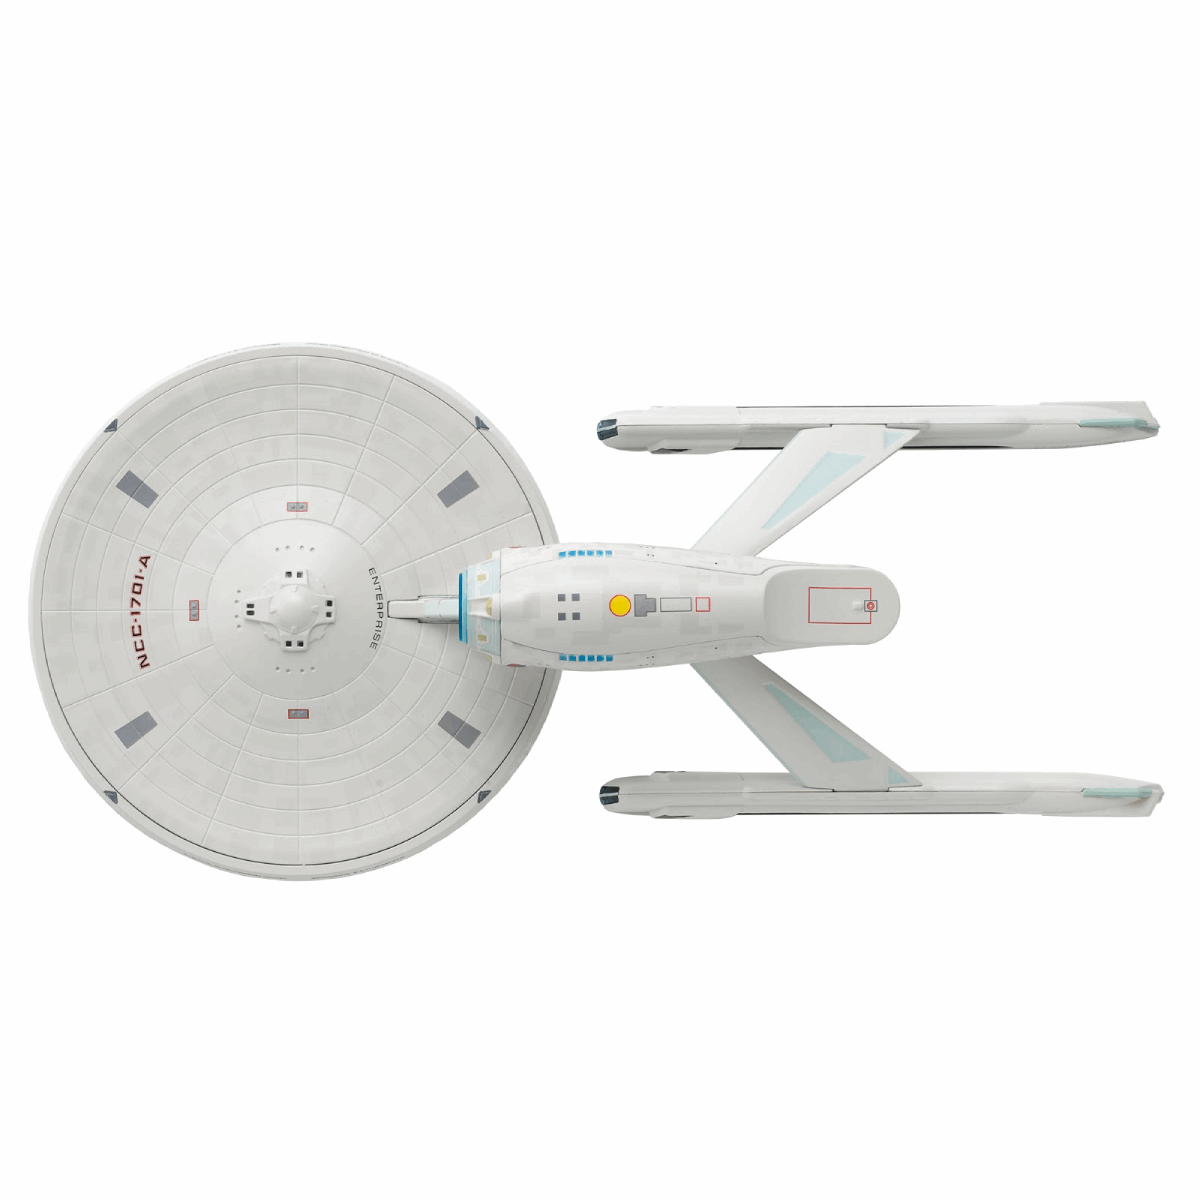 #06 U.S.S. Enterprise NCC-1701-A (Constitution-class refit) XL EDITION Die-cast Model Ship (Eaglemoss / Star Trek)